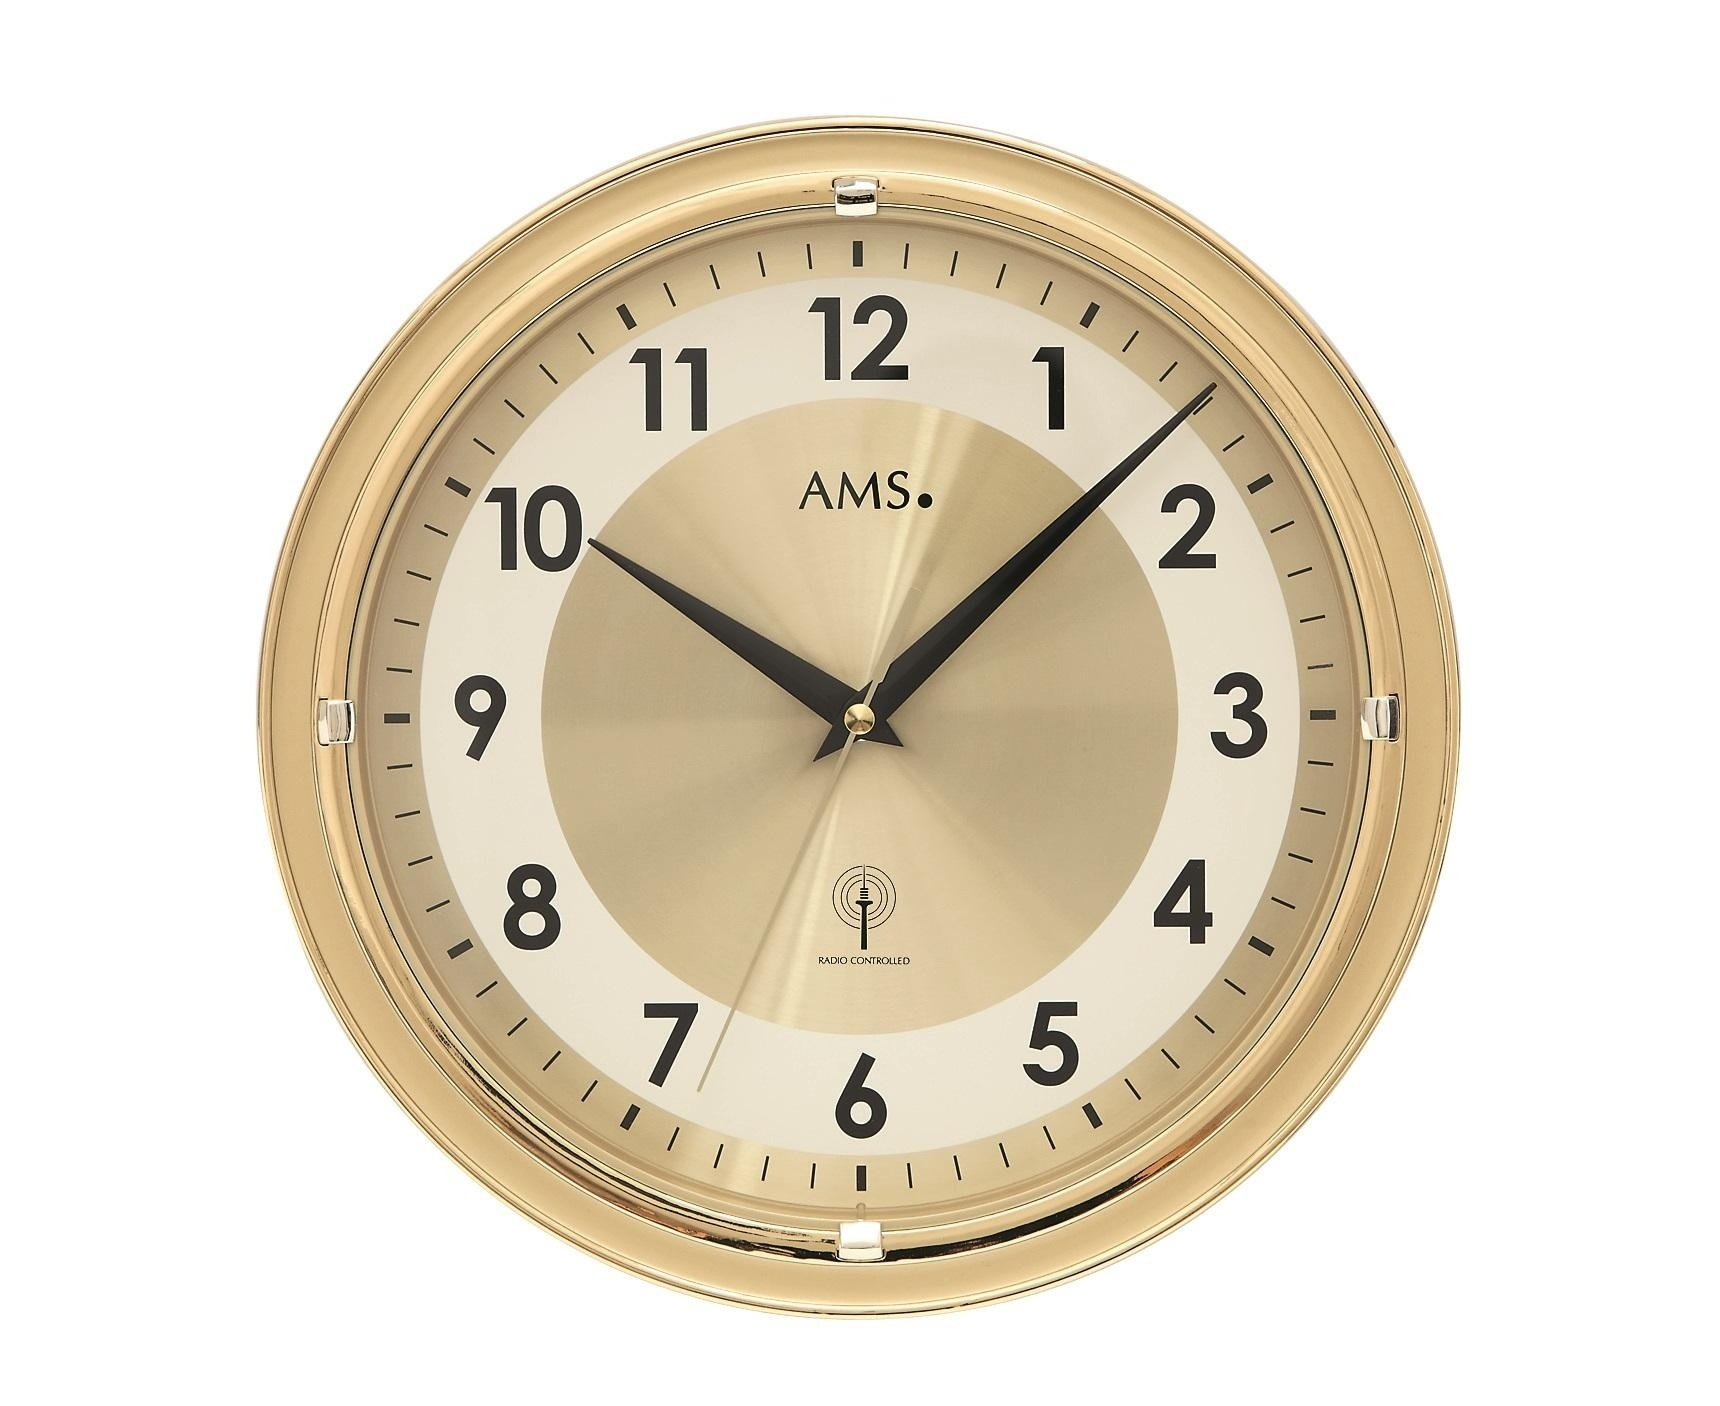 Nástěnné hodiny 5946 AMS řízené rádiovým signálem 30cm - záruka 3 roky + doprava ZDARMA!